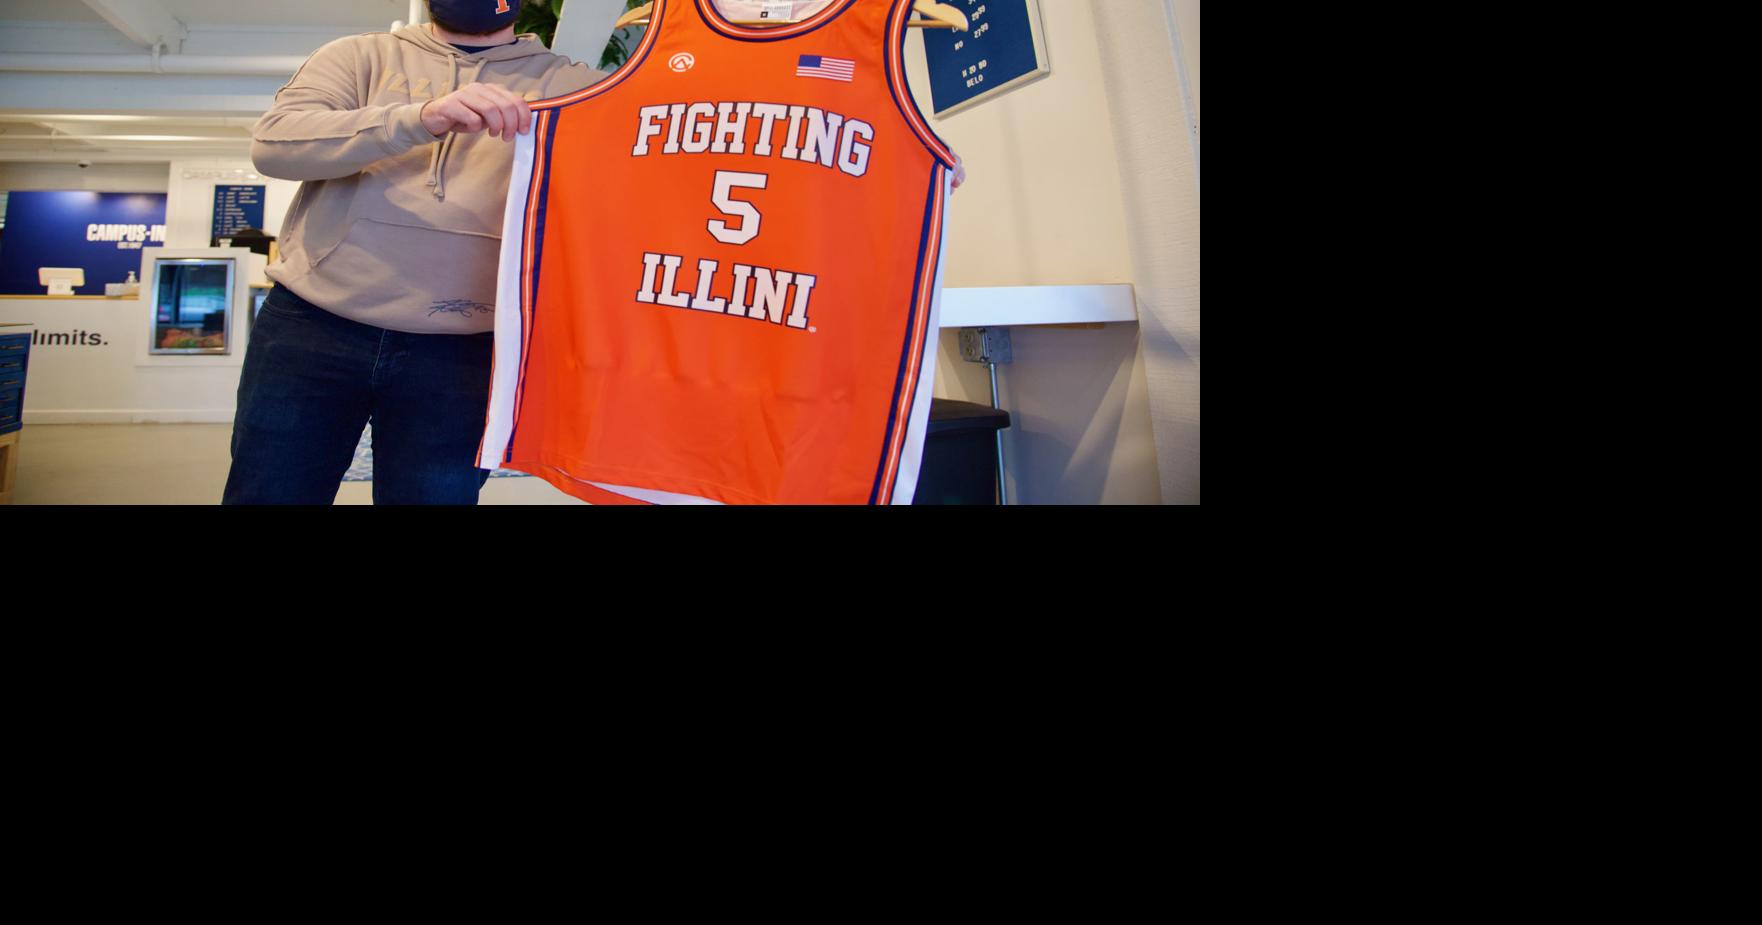 Illinois Fighting Illini Throwback Jersey S